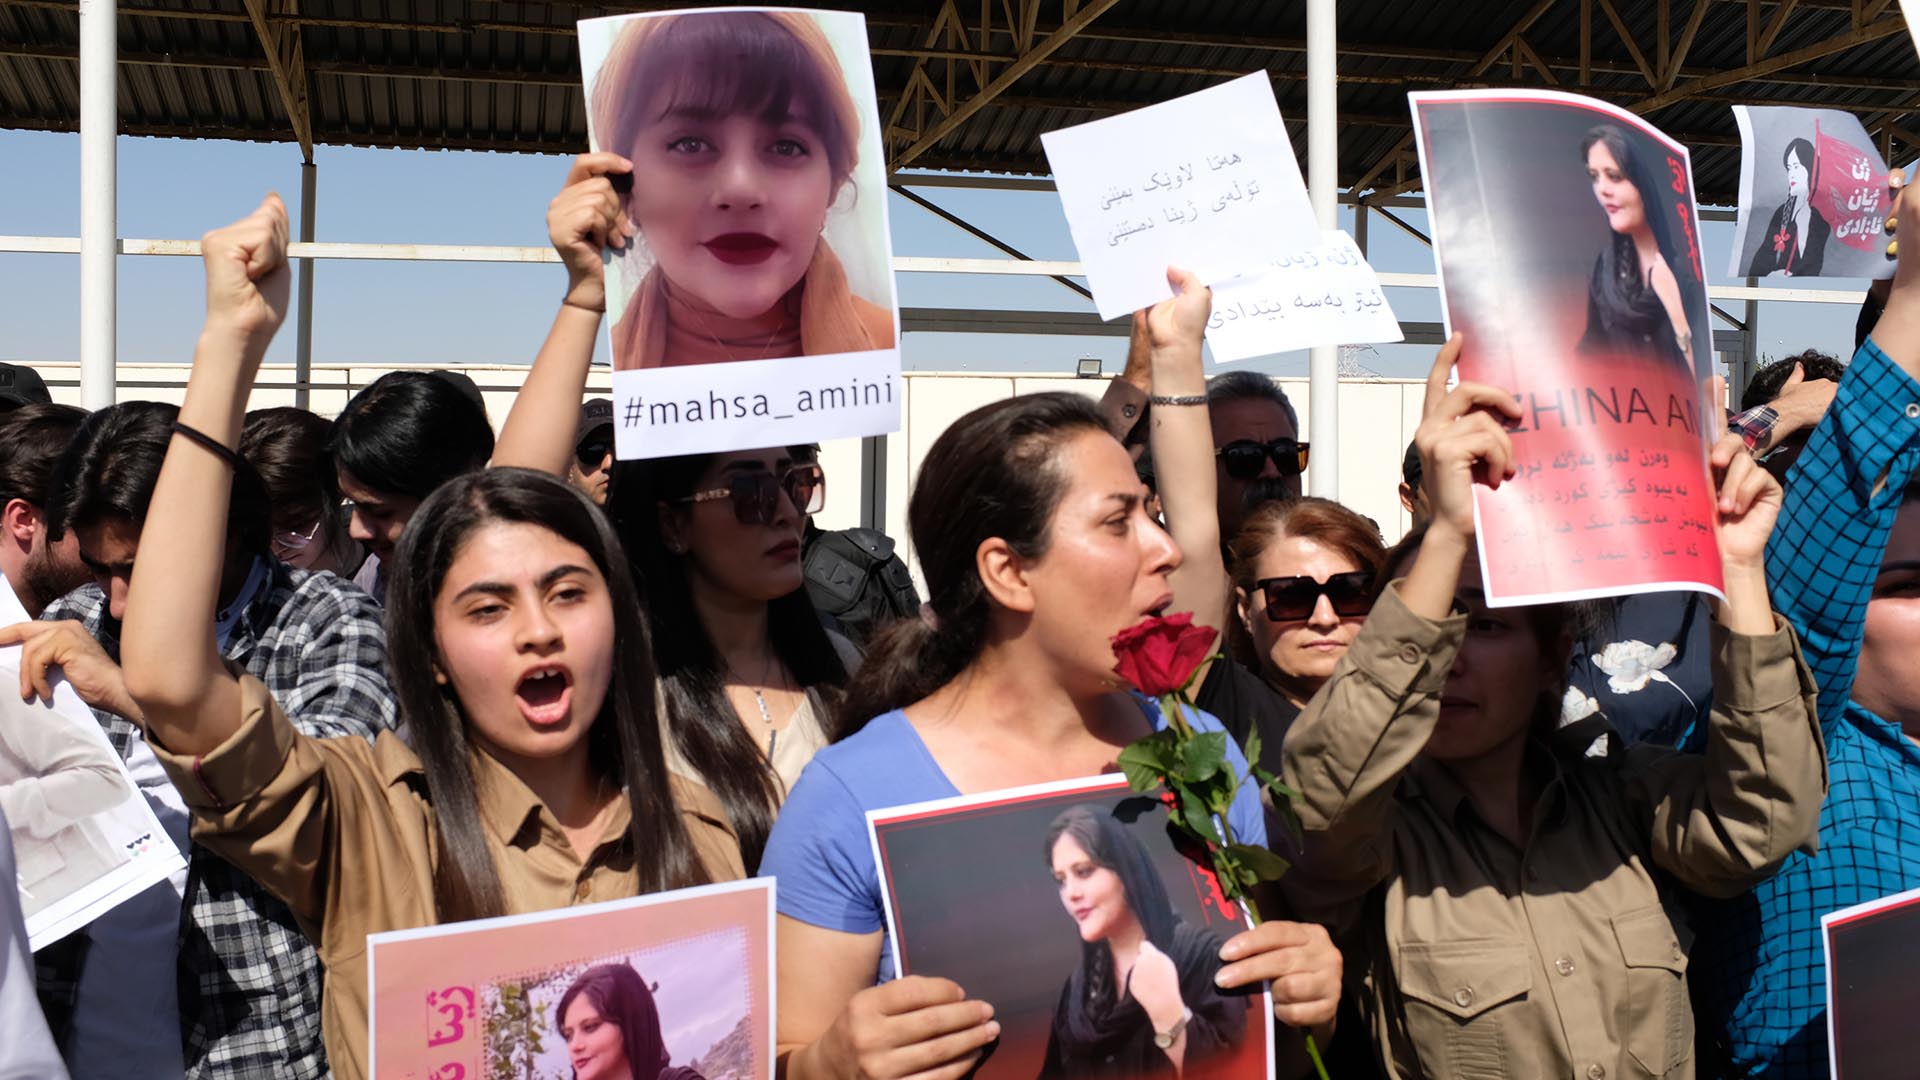 Las mujeres protestan en contra del régimen y piden justicia por la muerte de Masha Amini (AP /Hawre Khalid)